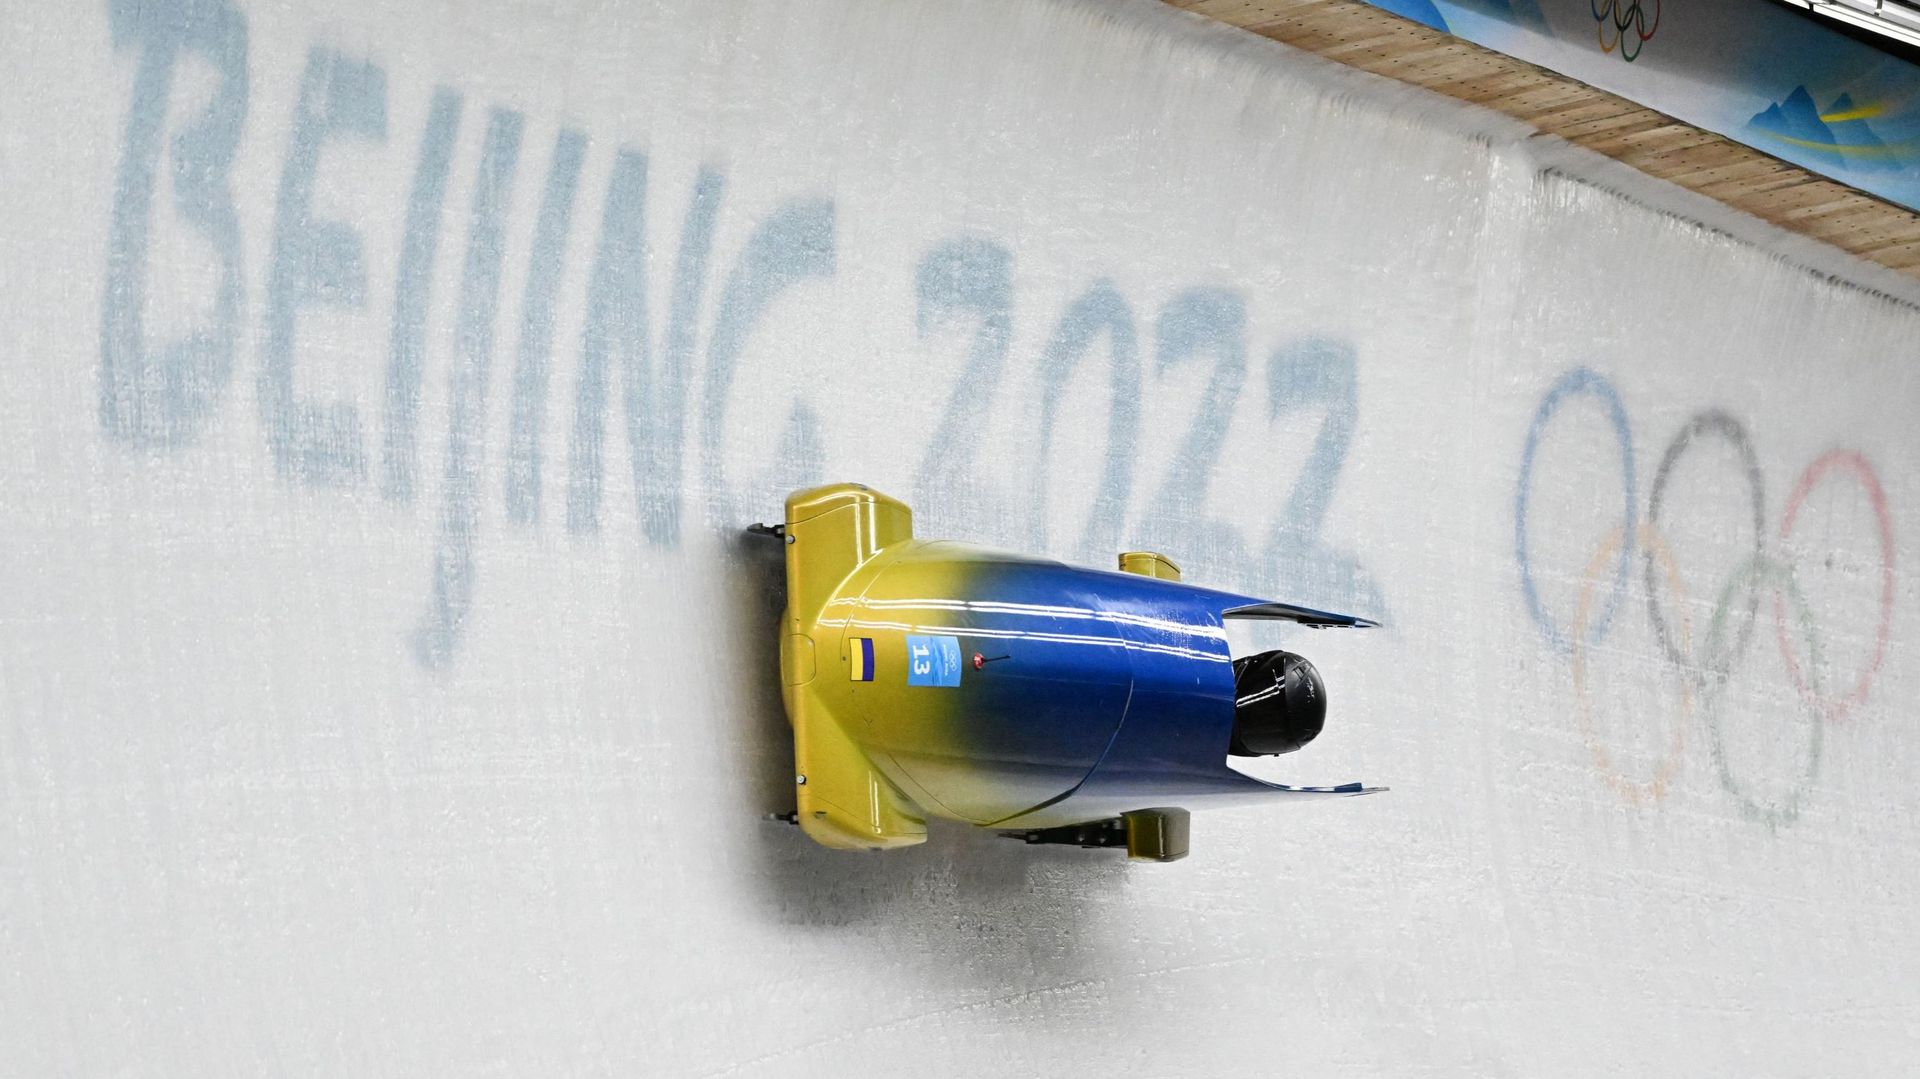 JO Pékin 2022 - La pilote ukrainienne de bobsleigh Lidiia Hunko a fait l'objet d'un contrôle antidopage positif durant les Jeux Olympiques d'hiver de Pékin, a annoncé l'Agence de contrôle internationale (ITA) jeudi. Il s'agit du deuxième cas de dopage con